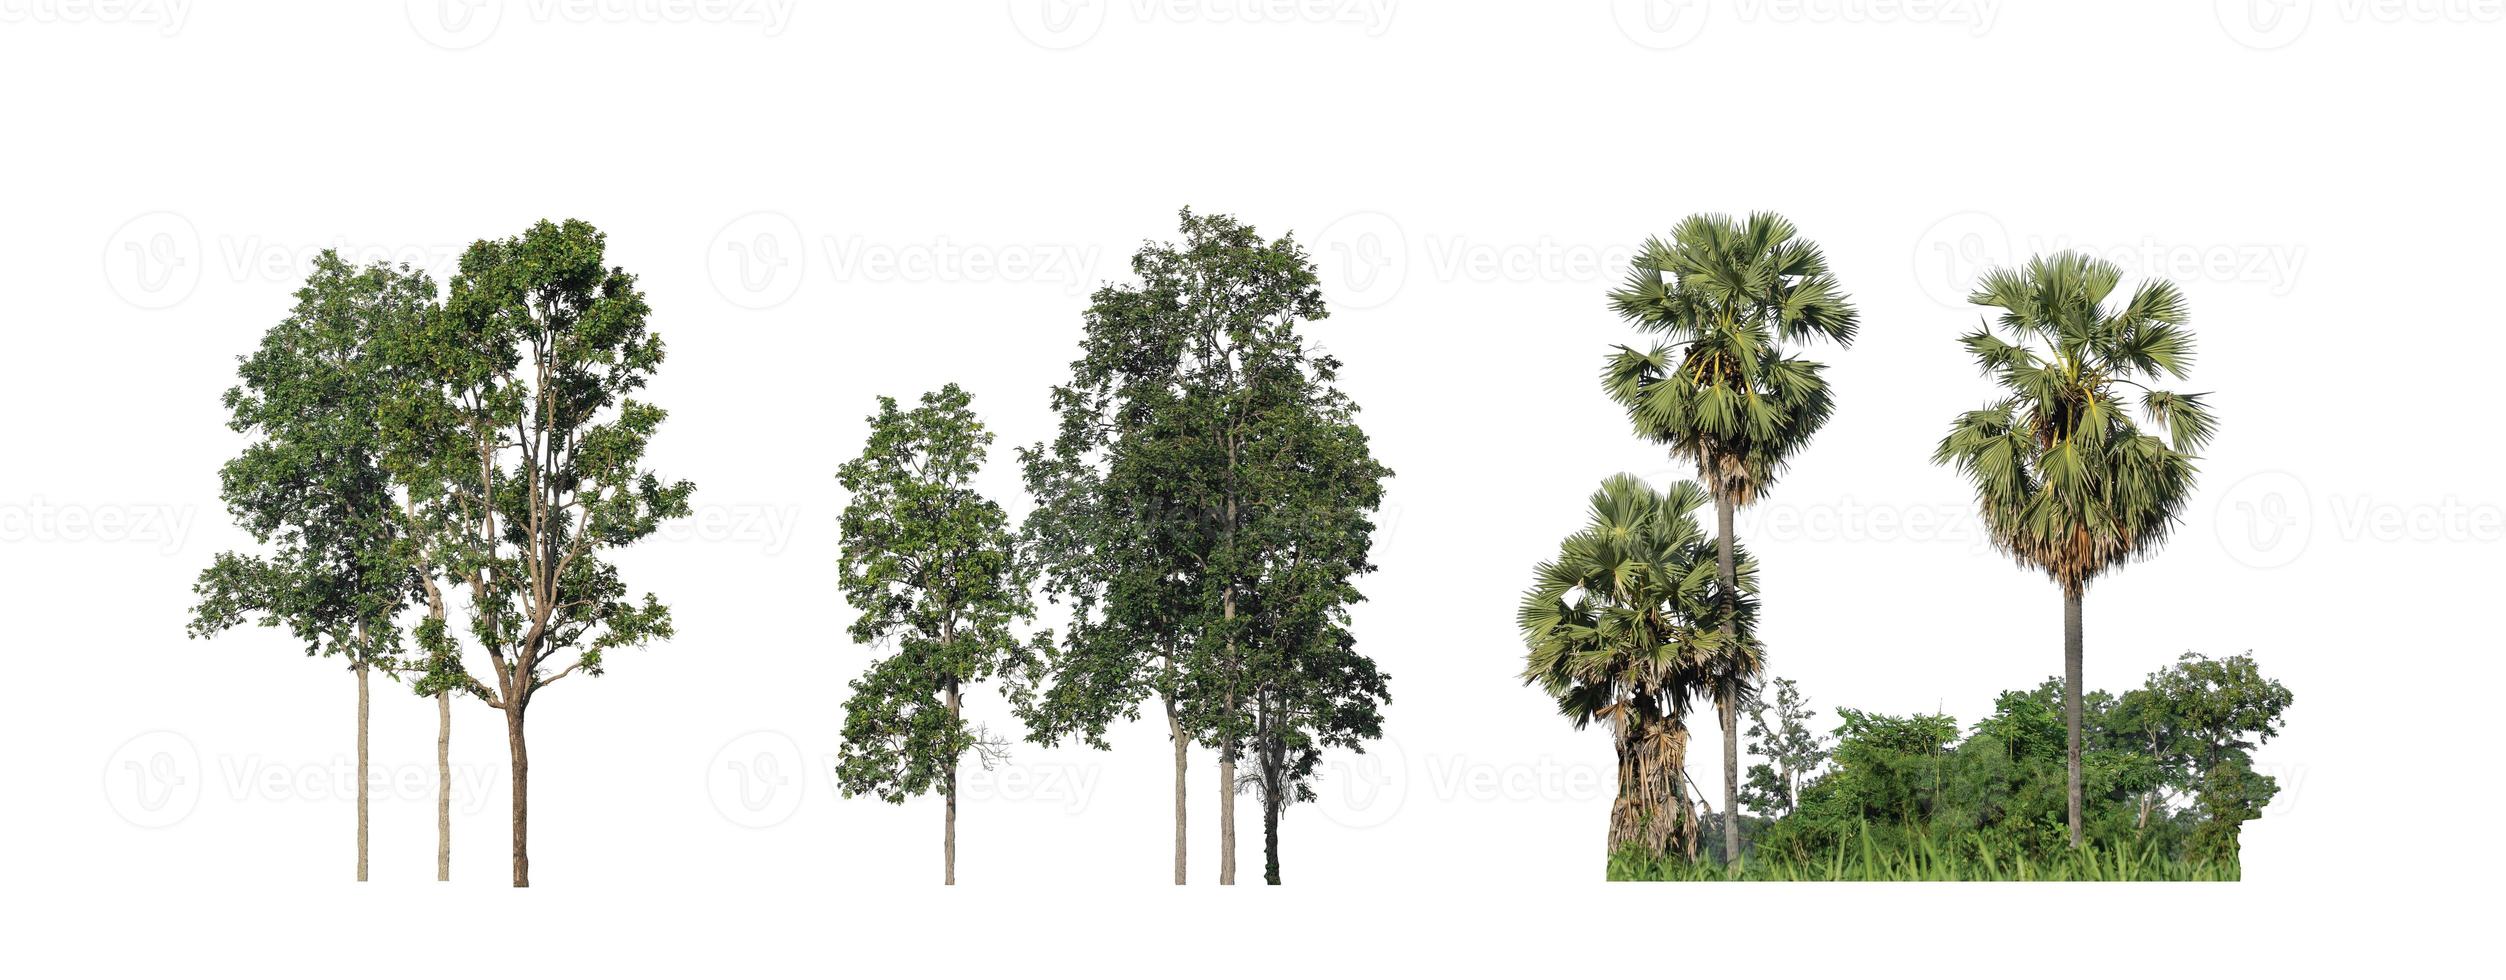 la collection d'arbres, ensemble d'arbres isolés sur fond blanc photo